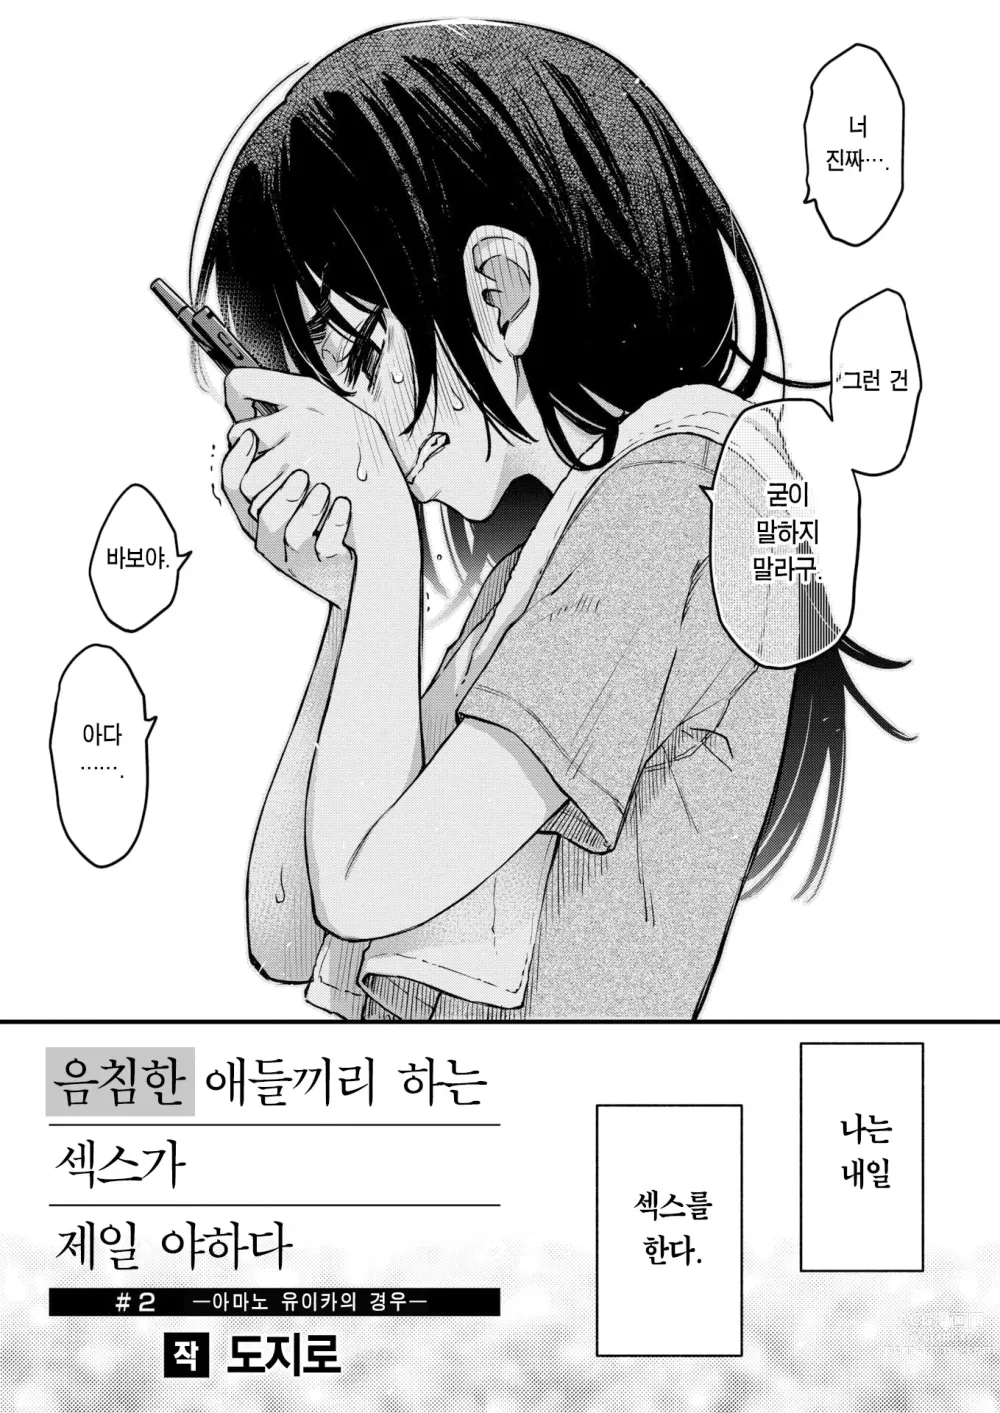 Page 4 of manga 음침한 애들끼리 하는 섹스가 제일 야하다 #2 ―아마노 유이카의 경우―